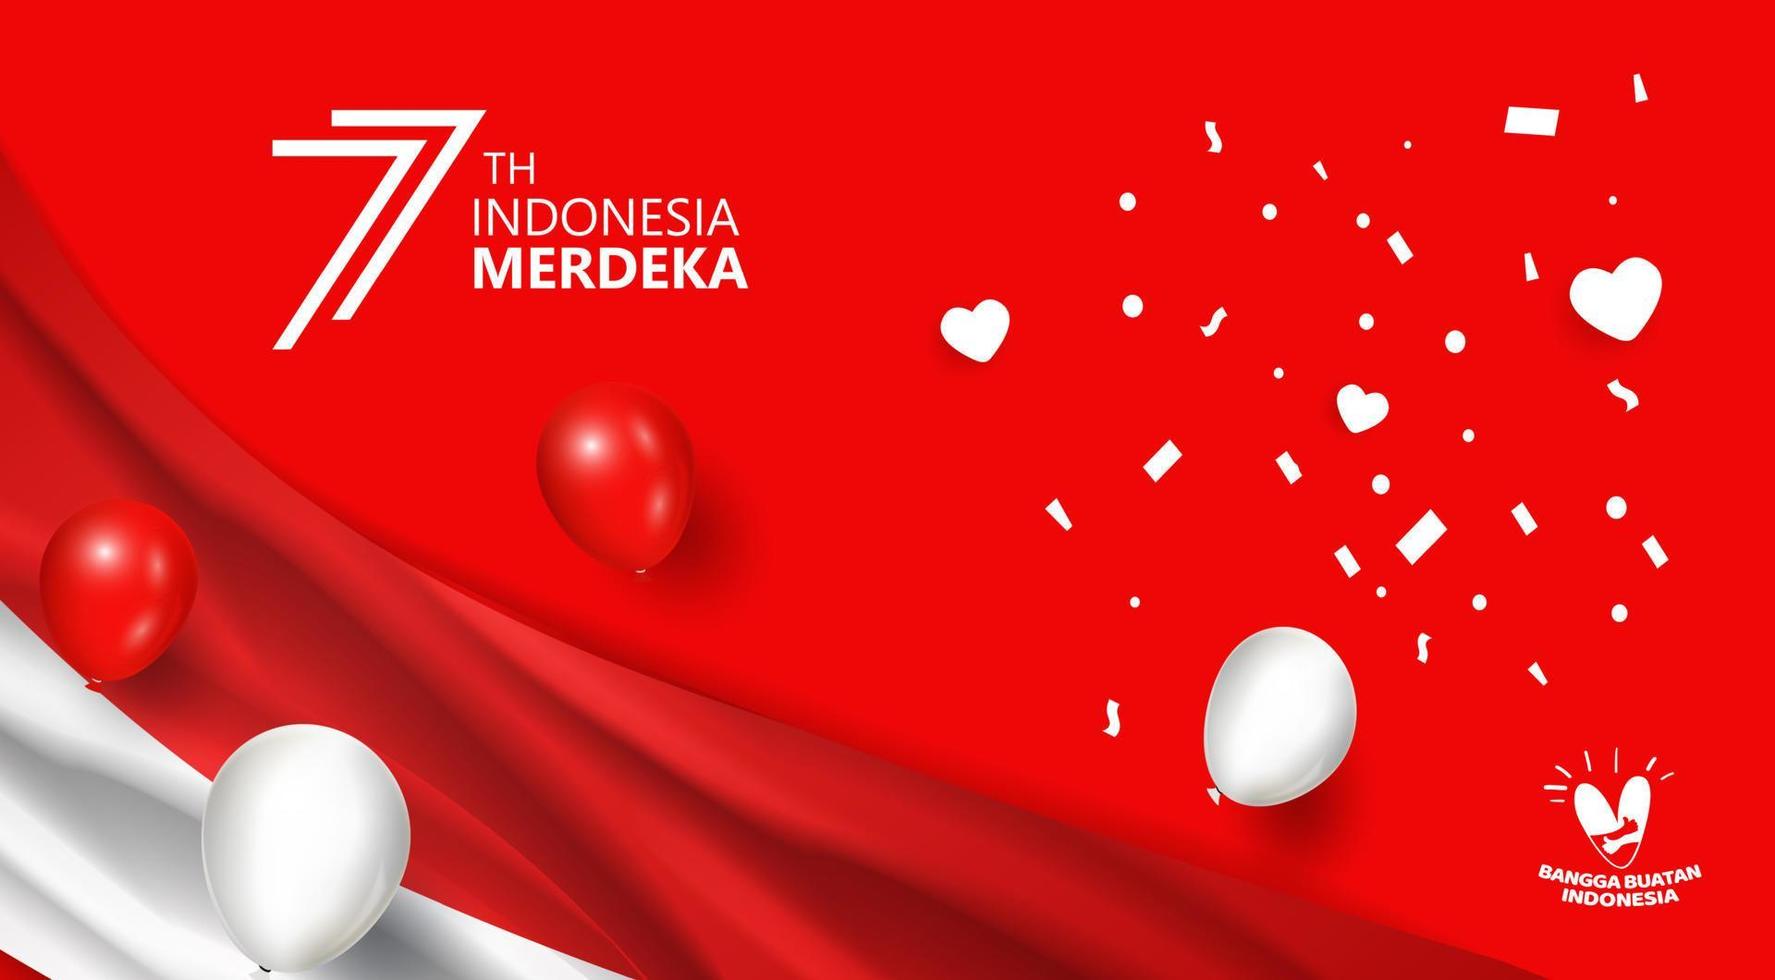 77 jaar, verjaardag onafhankelijkheidsdag republiek indonesië. illustratie banner sjabloonontwerp vector